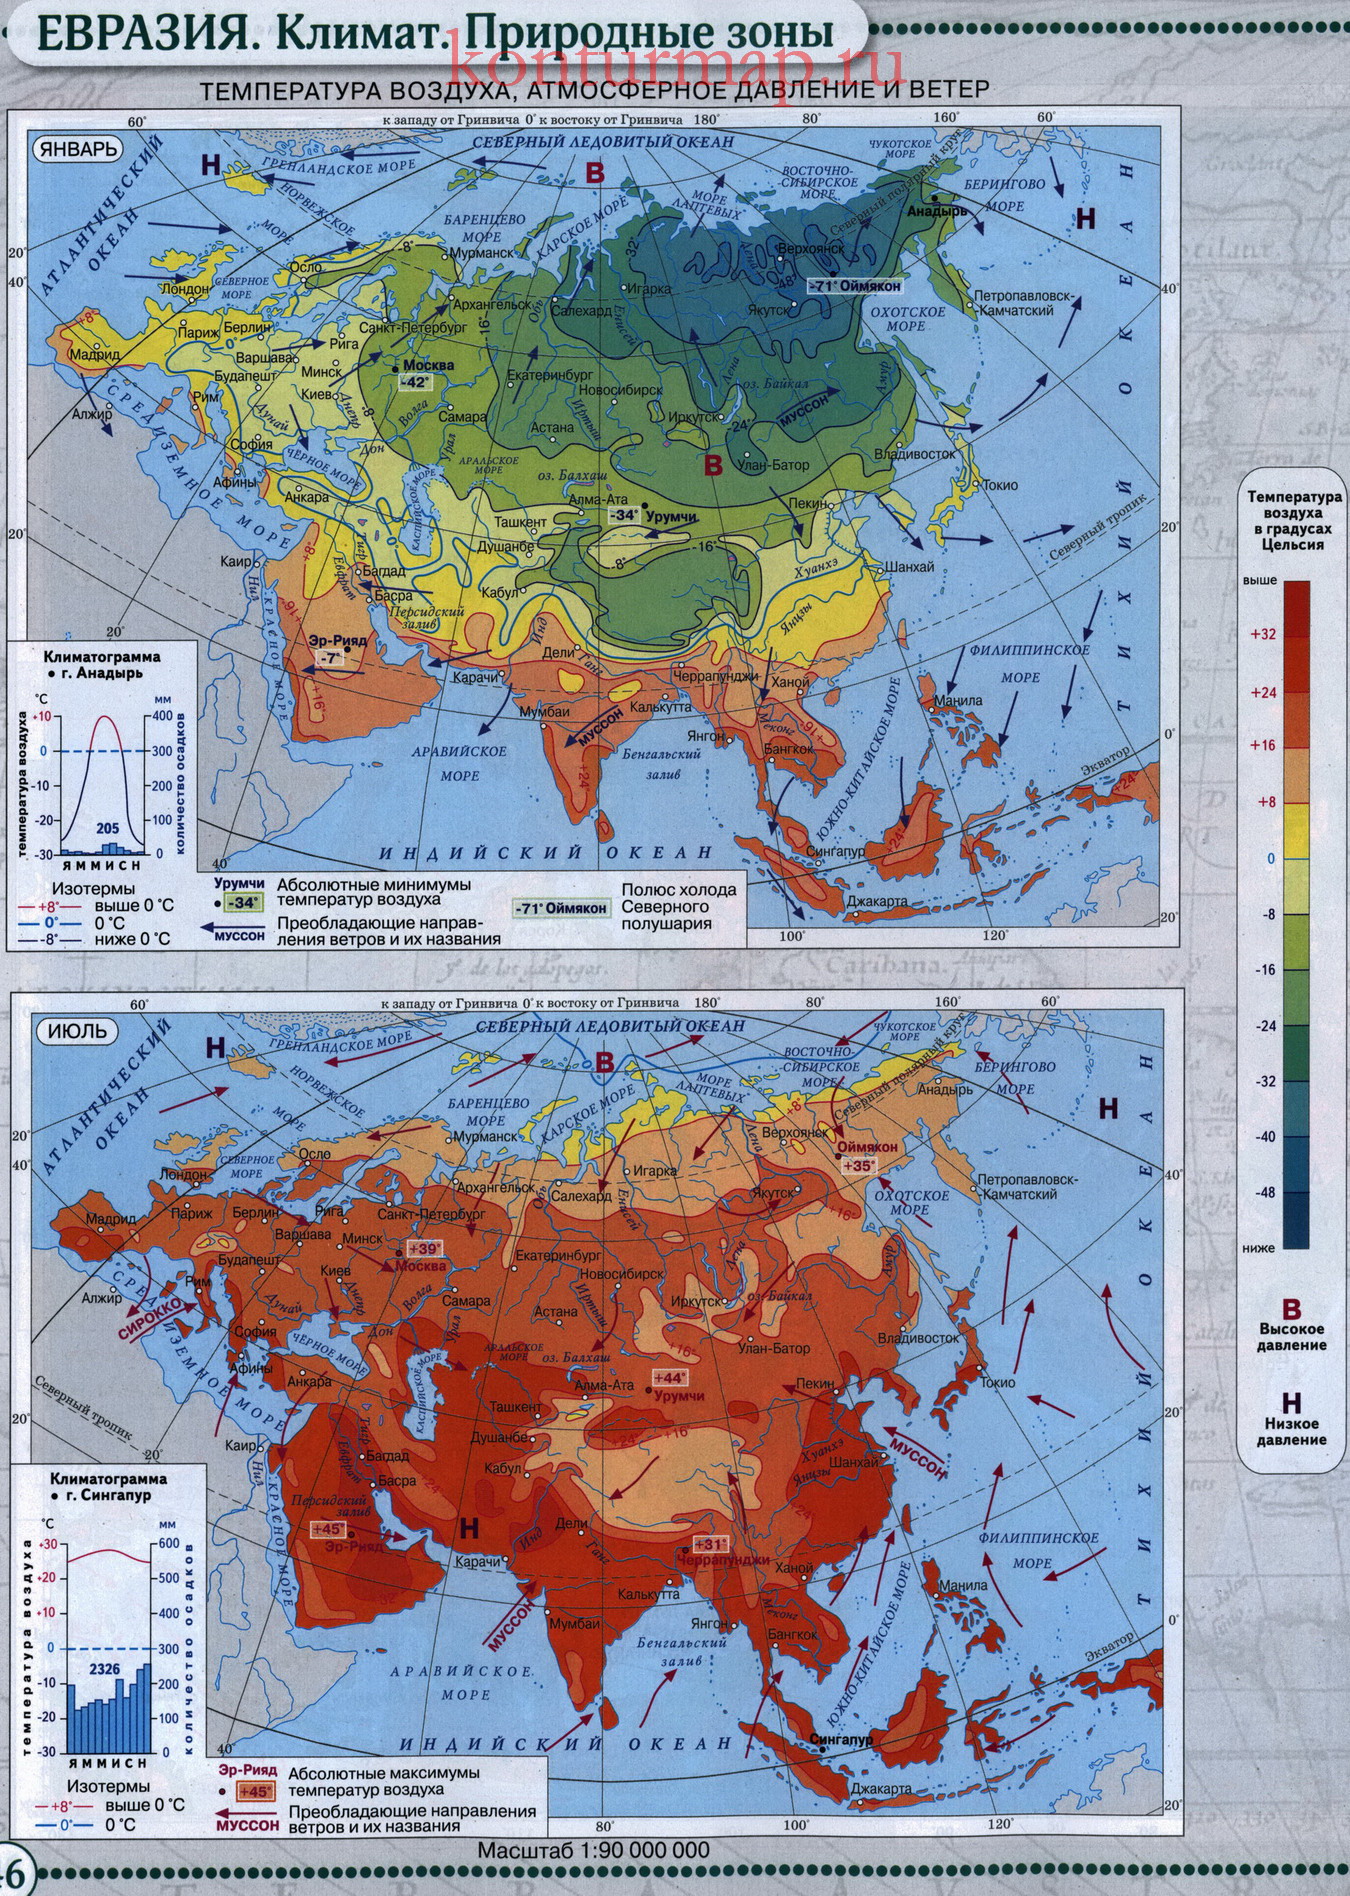 Средняя температура евразии. Климатическая карта Евразии. Карта Евразии климатическая карта крупная. Карта природных зон Евразии. Карта климатических зон Евразии.